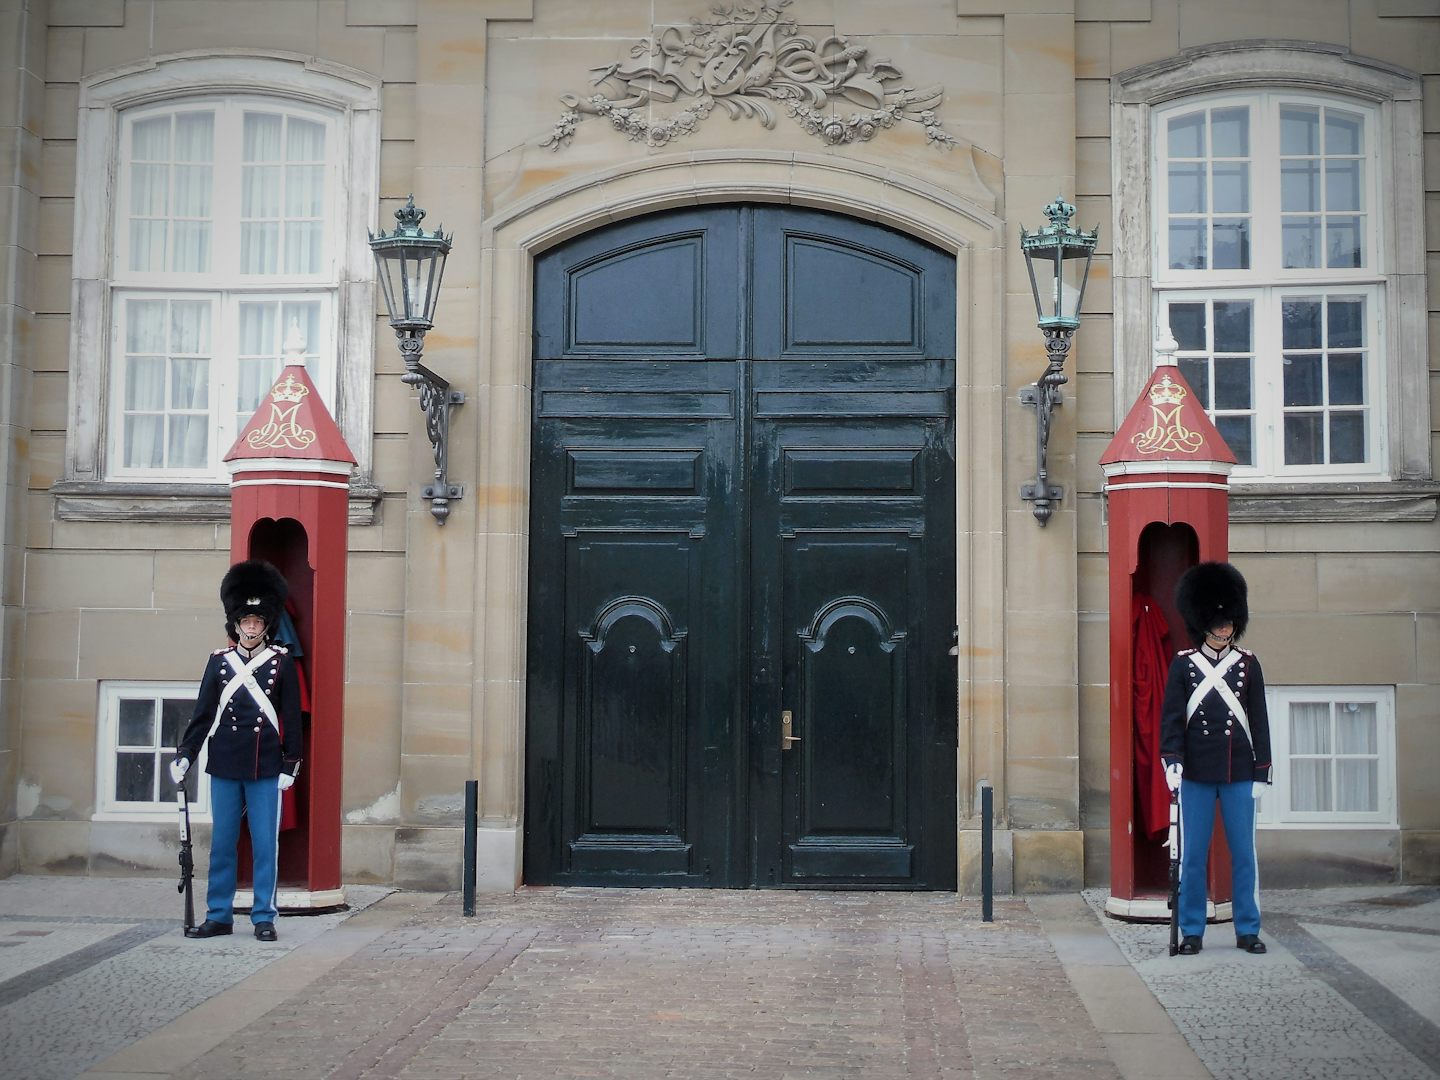 Danish Royal Guards at palace